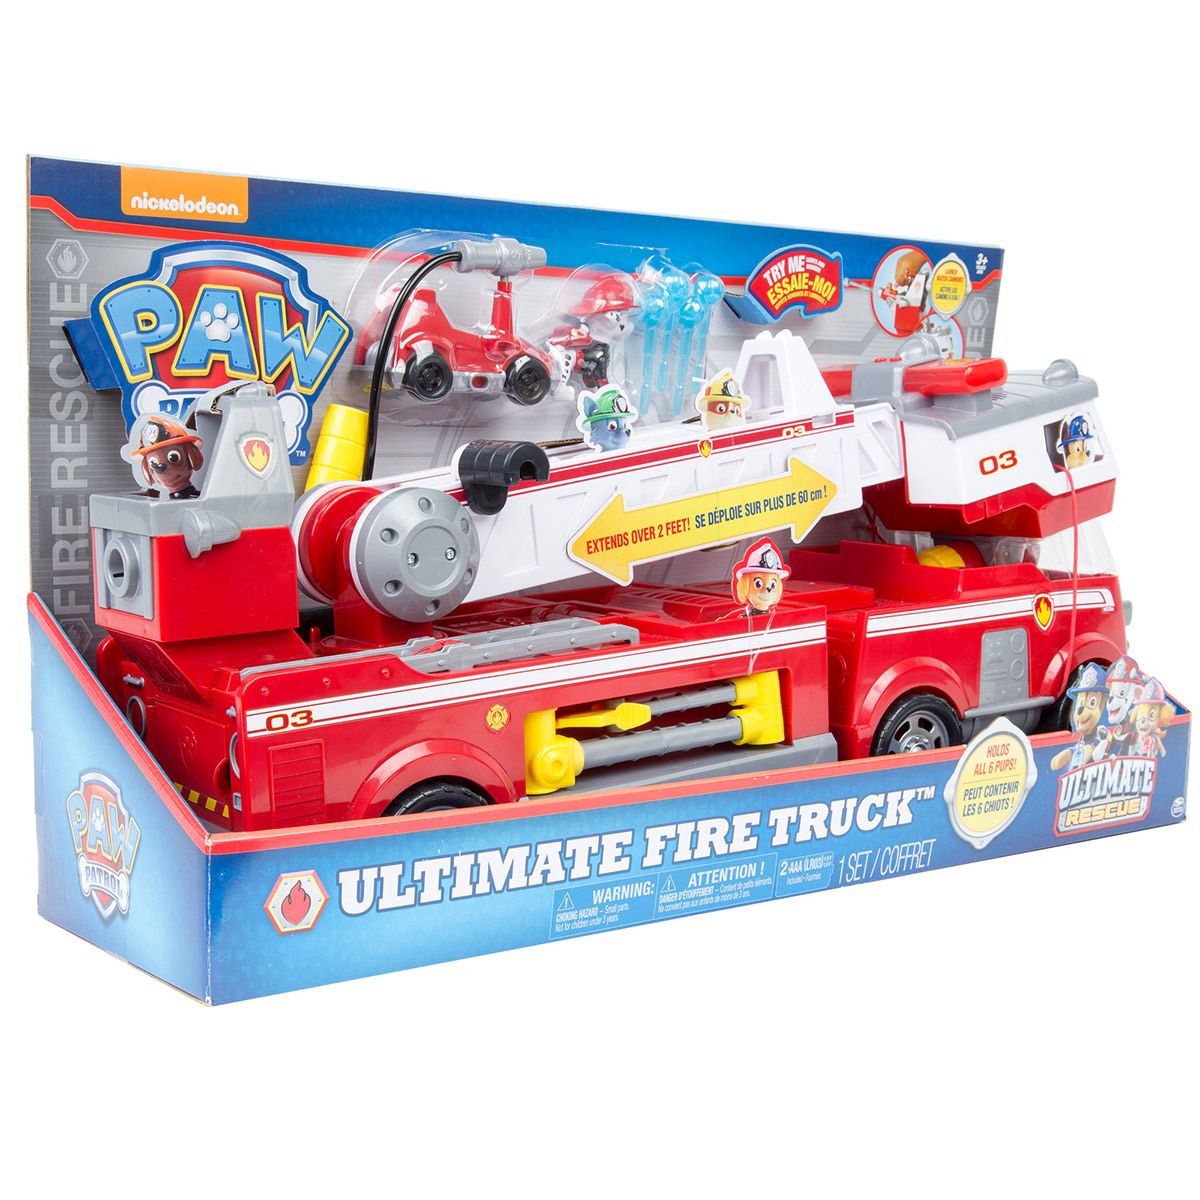 pat patrouille camion de pompiers ultimate rescue